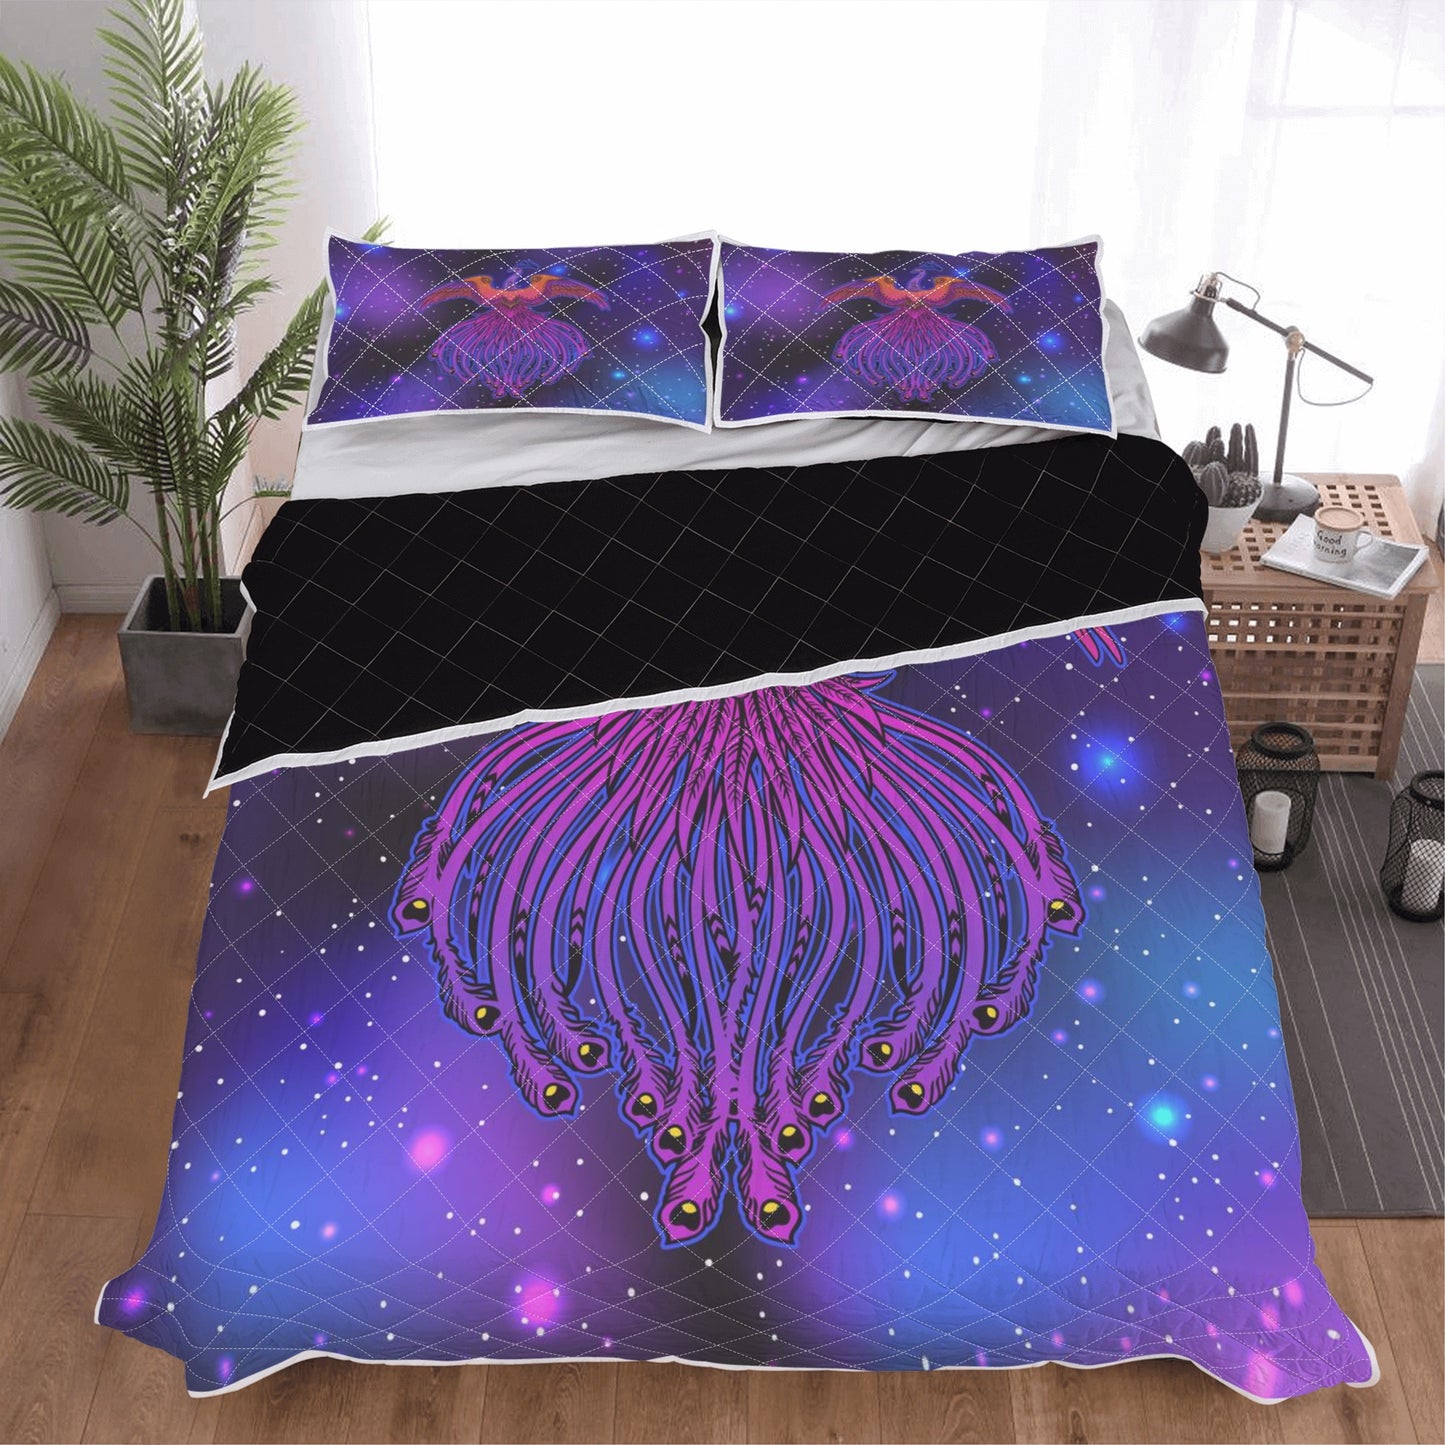 A Phoenix Quilt Bed Set